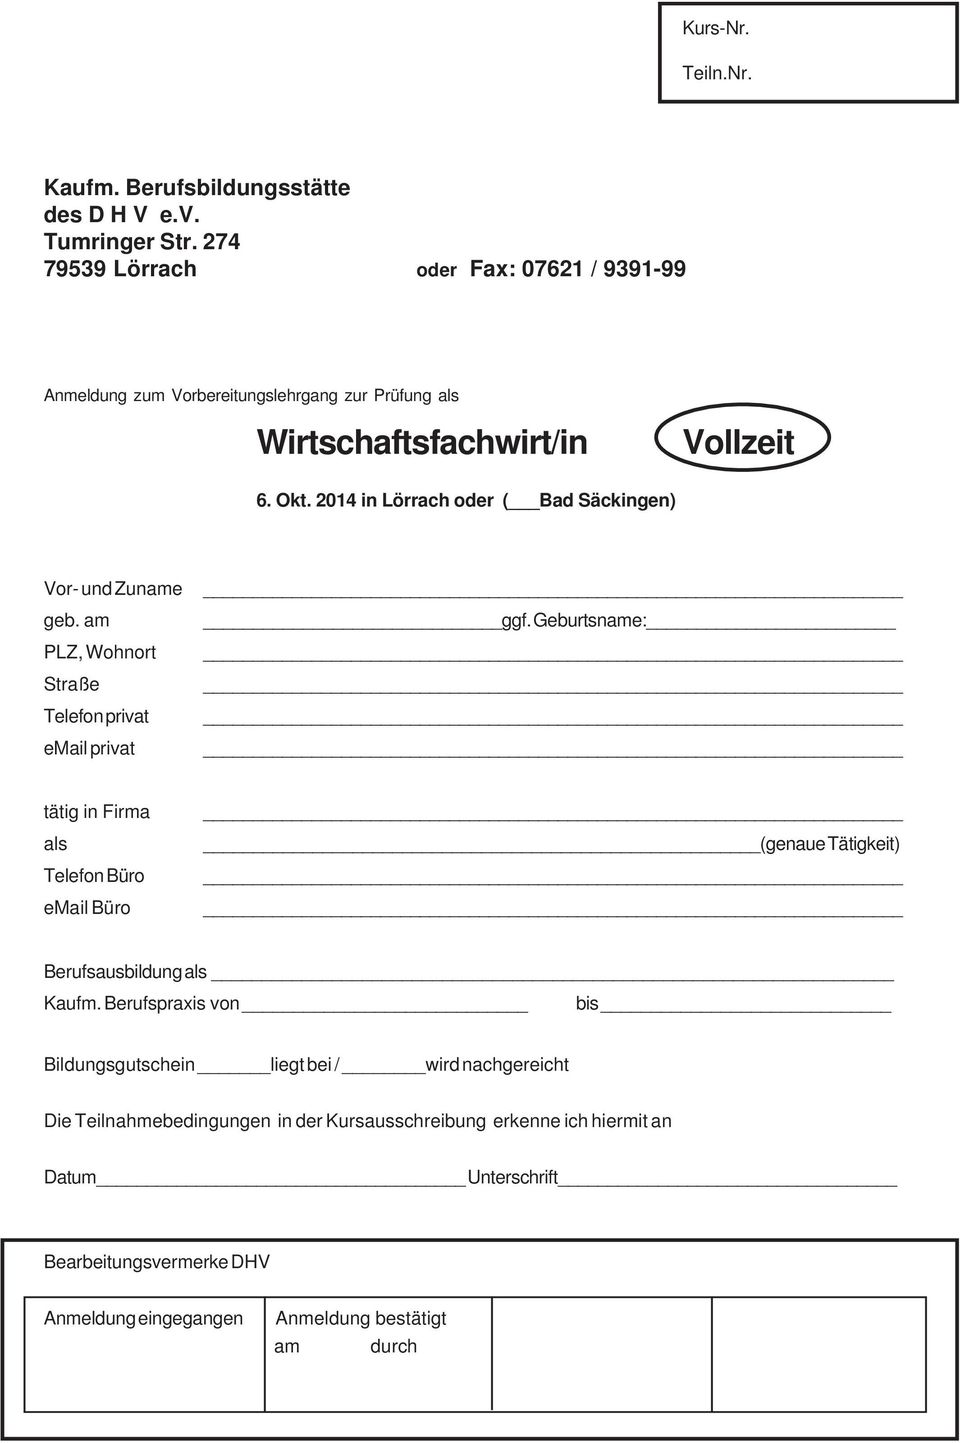 2014 in Lörrach oder ( Bad Säckingen) Vor- und Zuname geb. am PLZ, Wohnort Straße Telefon privat email privat ggf.